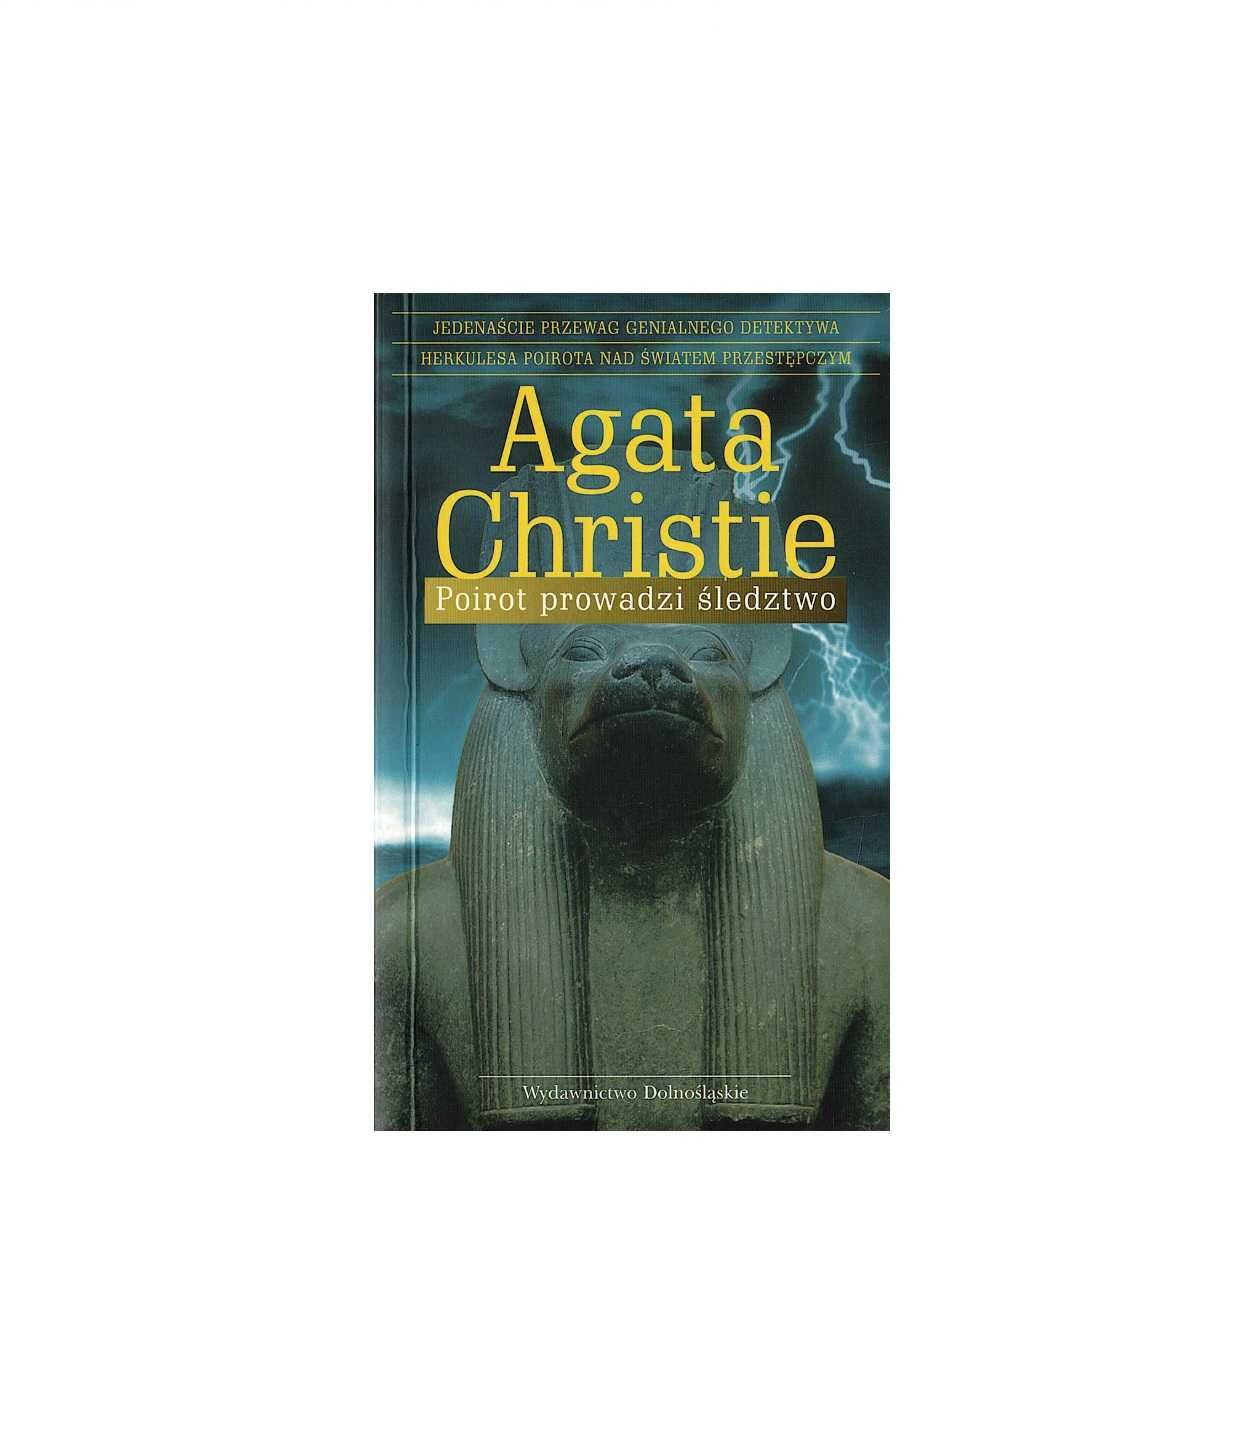 Poriot prowadzi śledztwo - Agata Christie - kieszonkowa